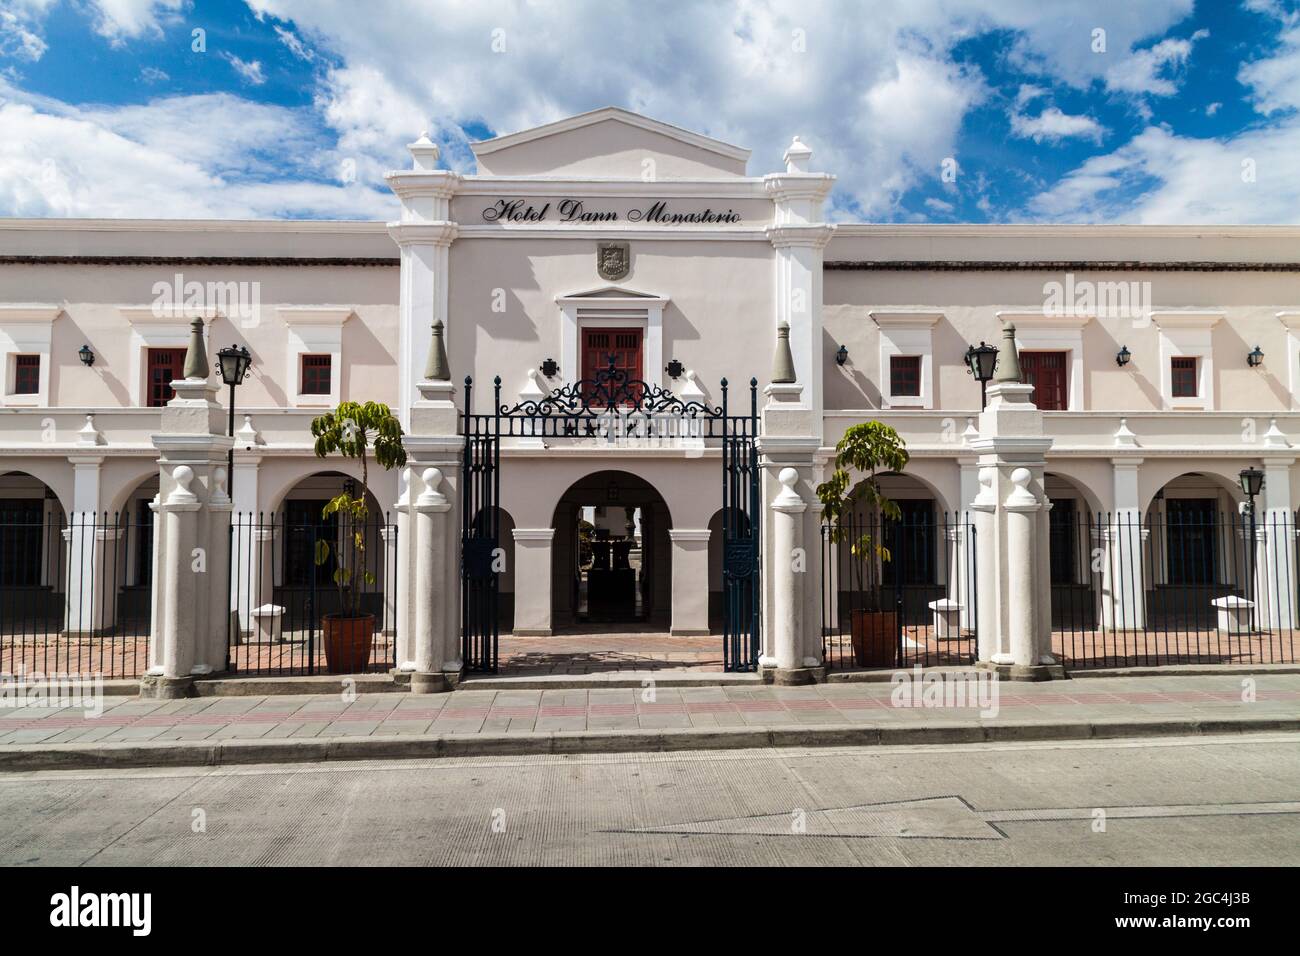 POPAYAN, COLOMBIA - 10 SETTEMBRE 2015: Ingresso all'Hotel Dann Monasterio nella città coloniale di Popayan, Colombia Foto Stock